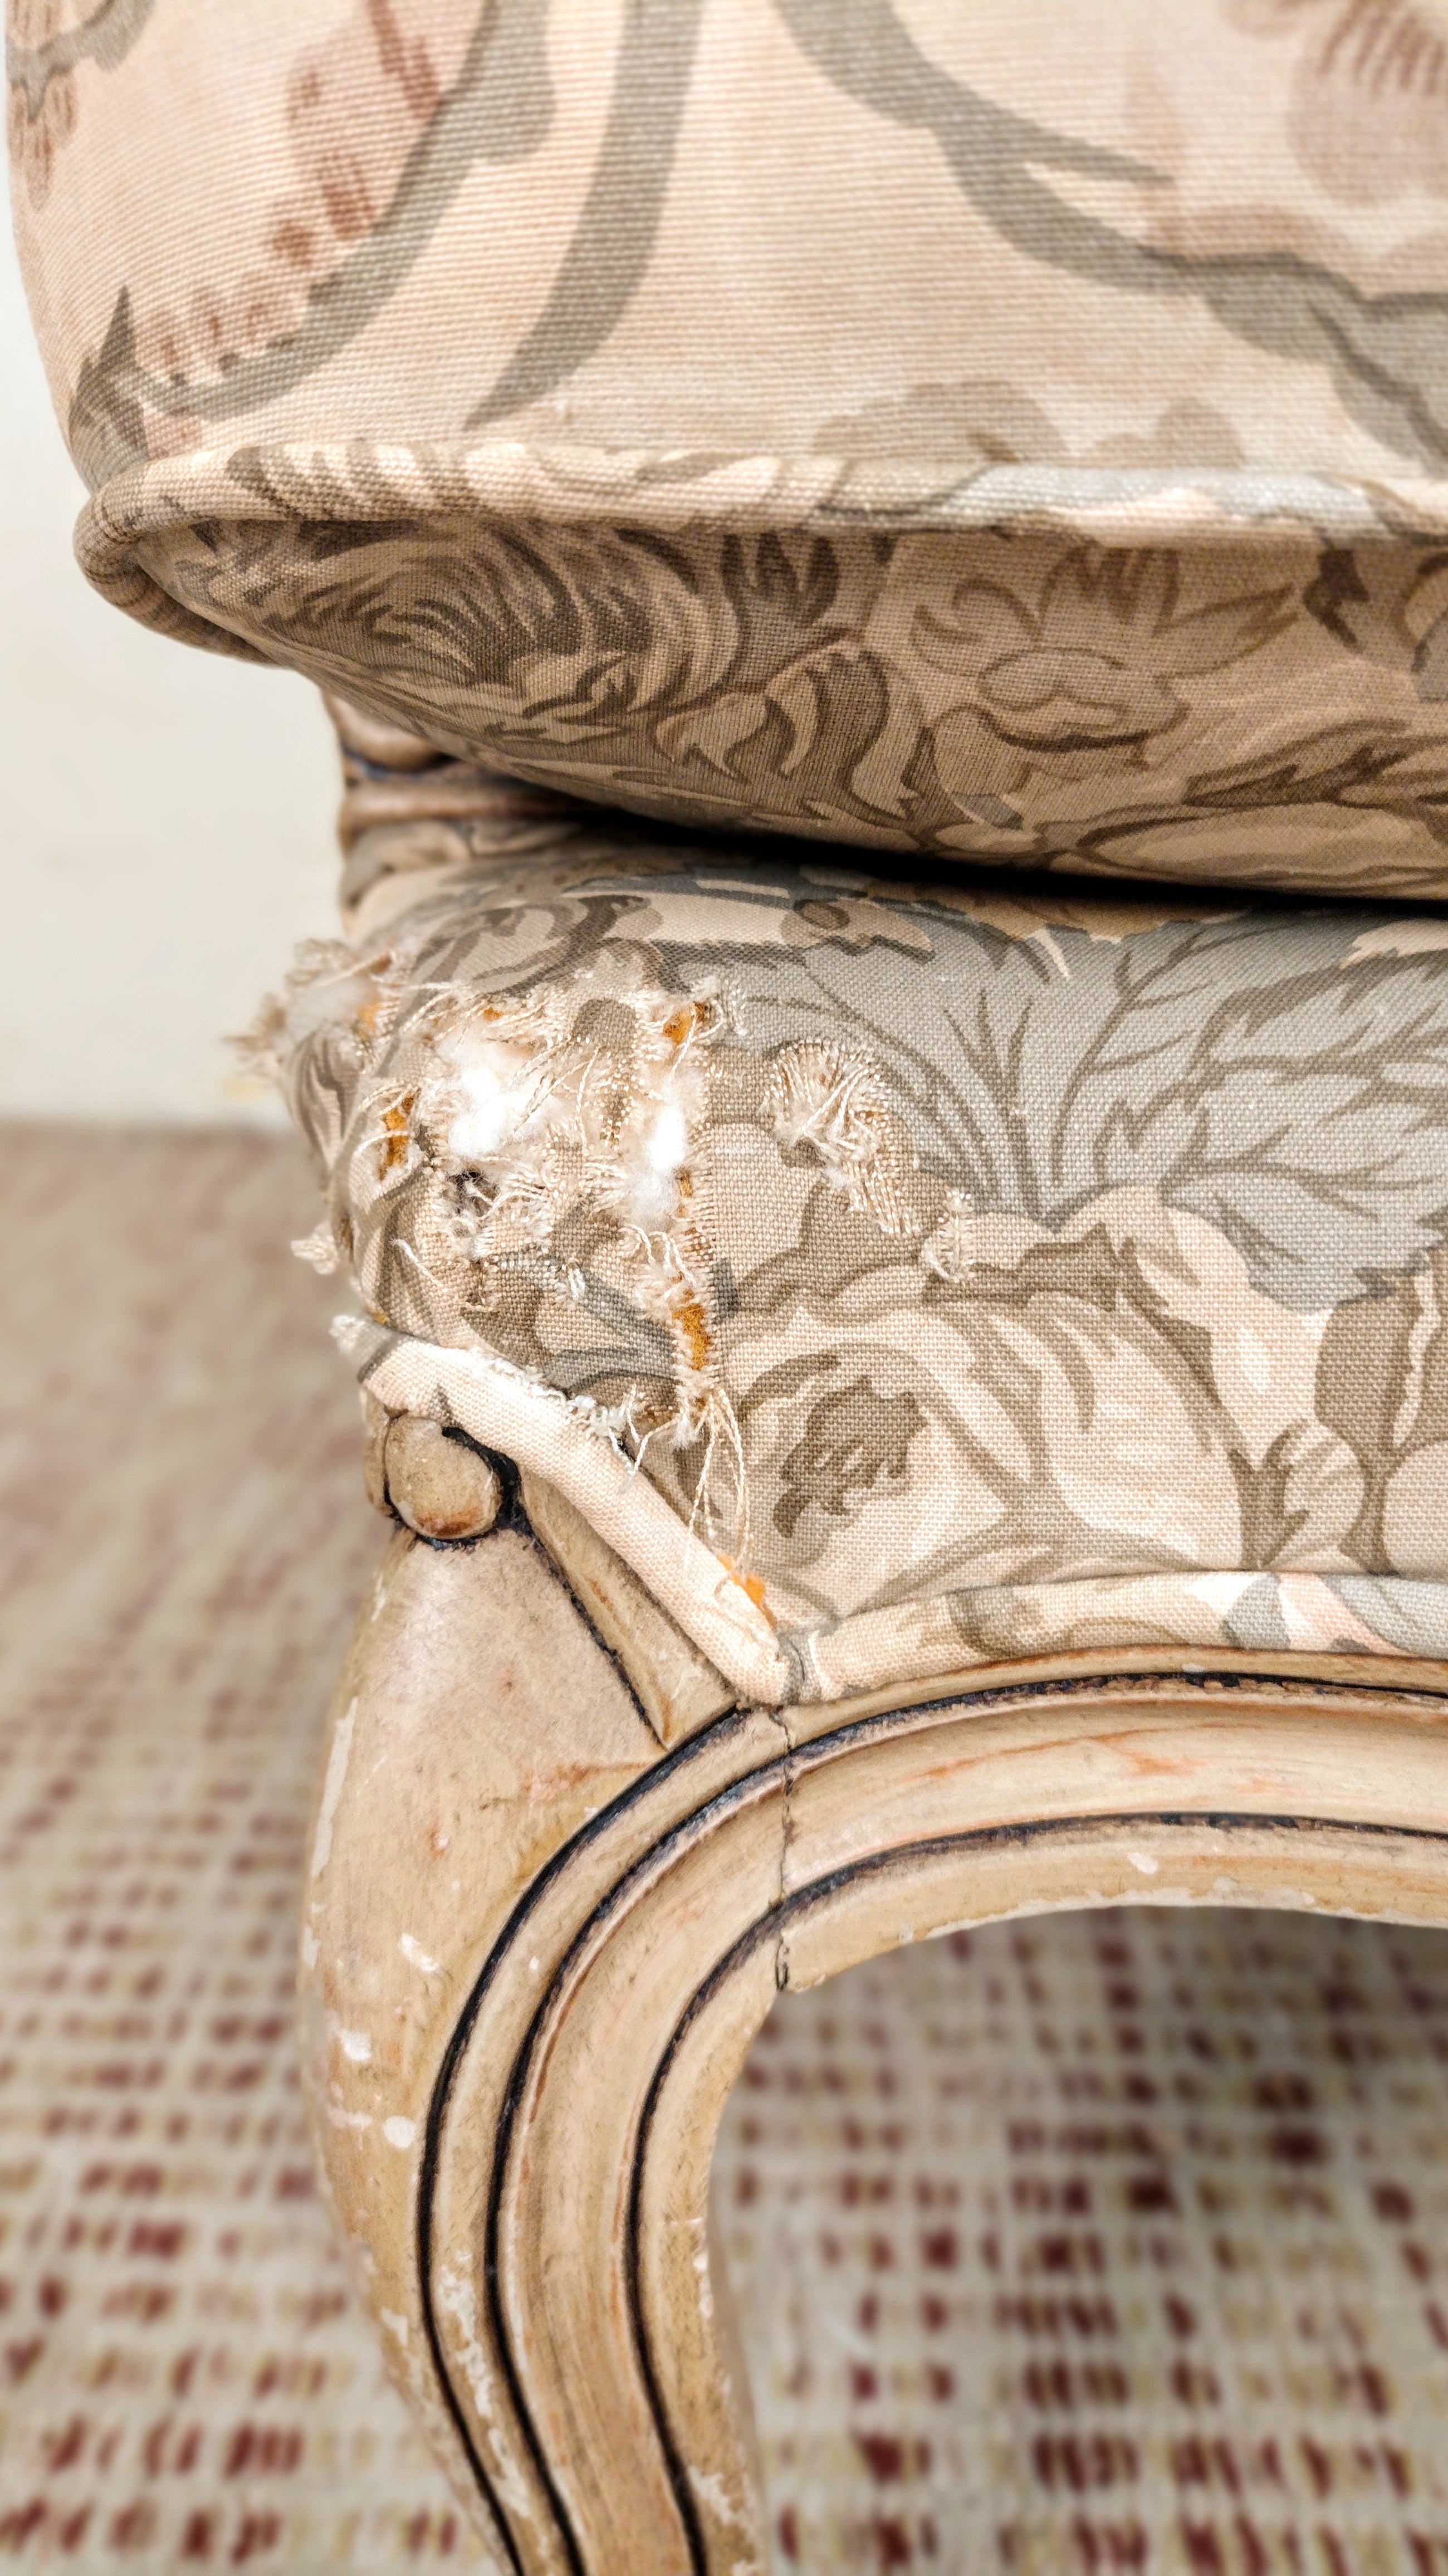 Poltrona Bergere estilo Luiz XV em tecido florido e madeira laqueada